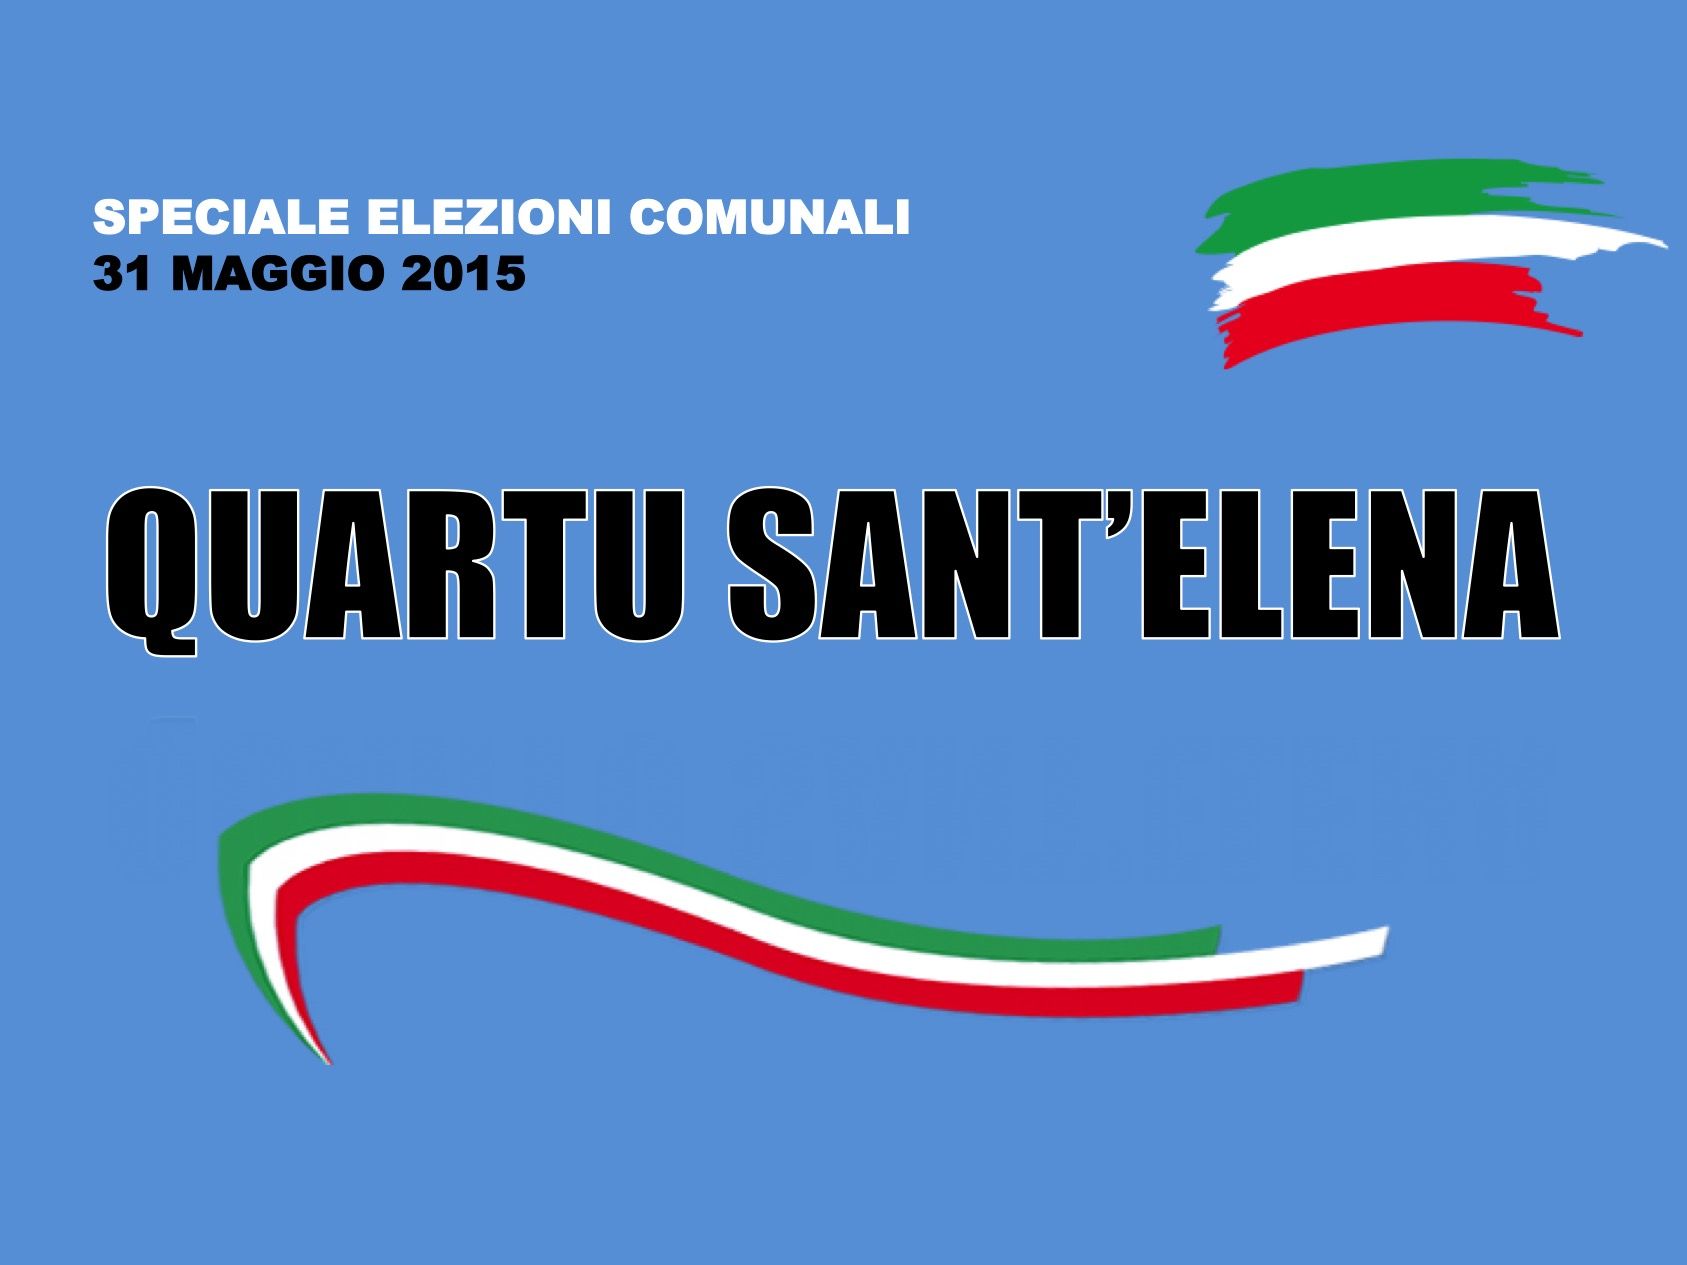 Quartu Sant'Elena. Elezioni Comunali 31 maggio 2015. I risultati delle votazioni